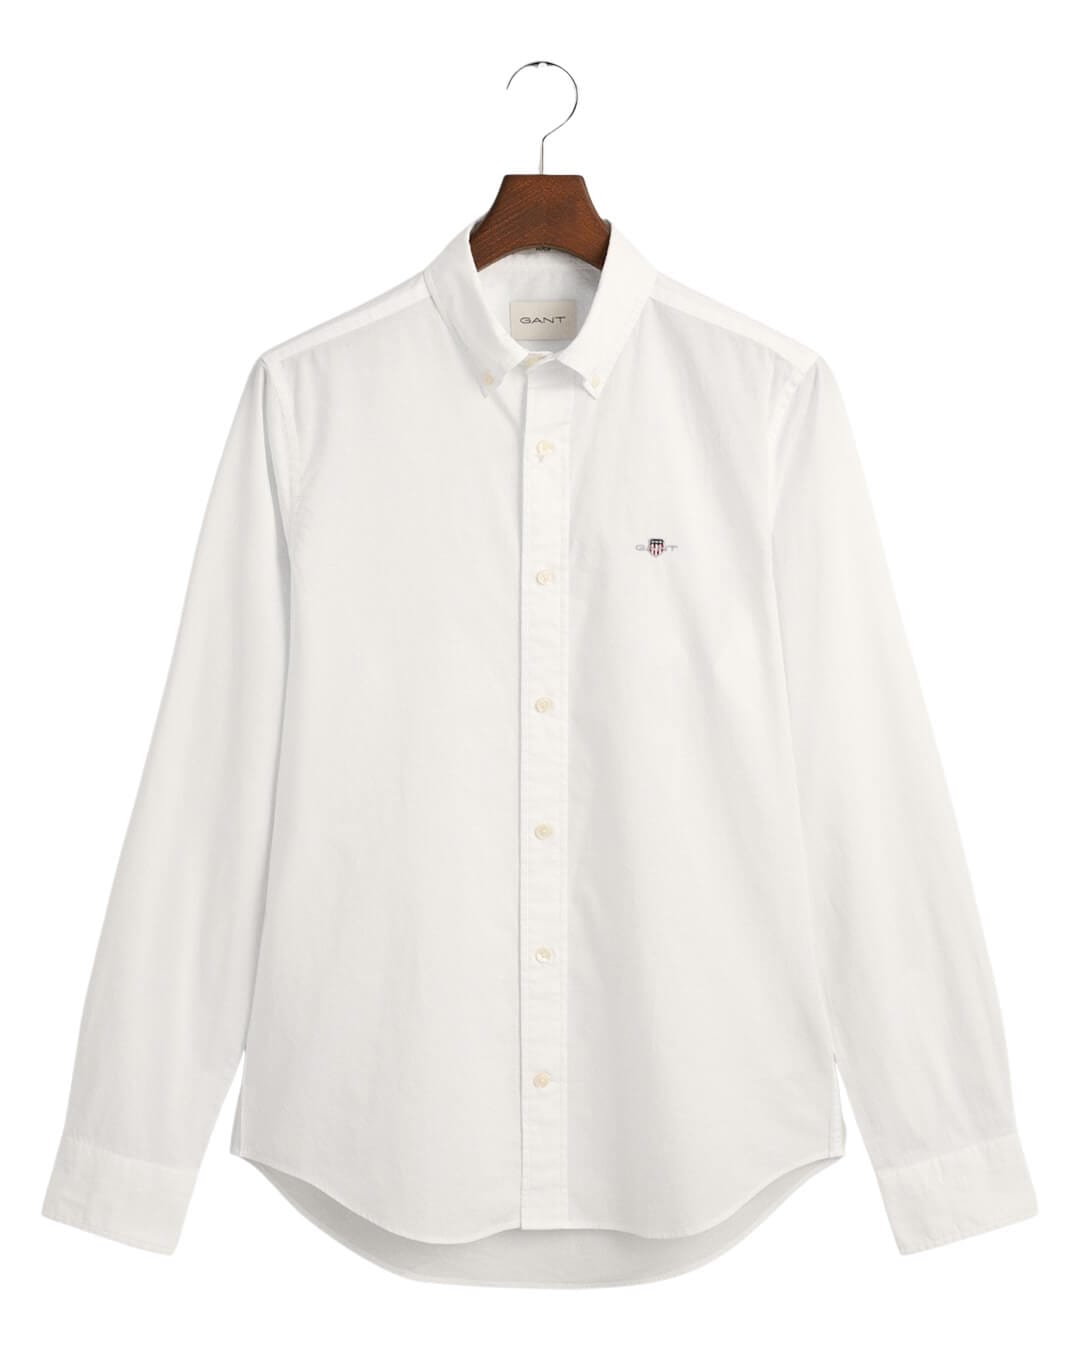 Gant Shirts Gant White Slim Fit Poplin Shirt